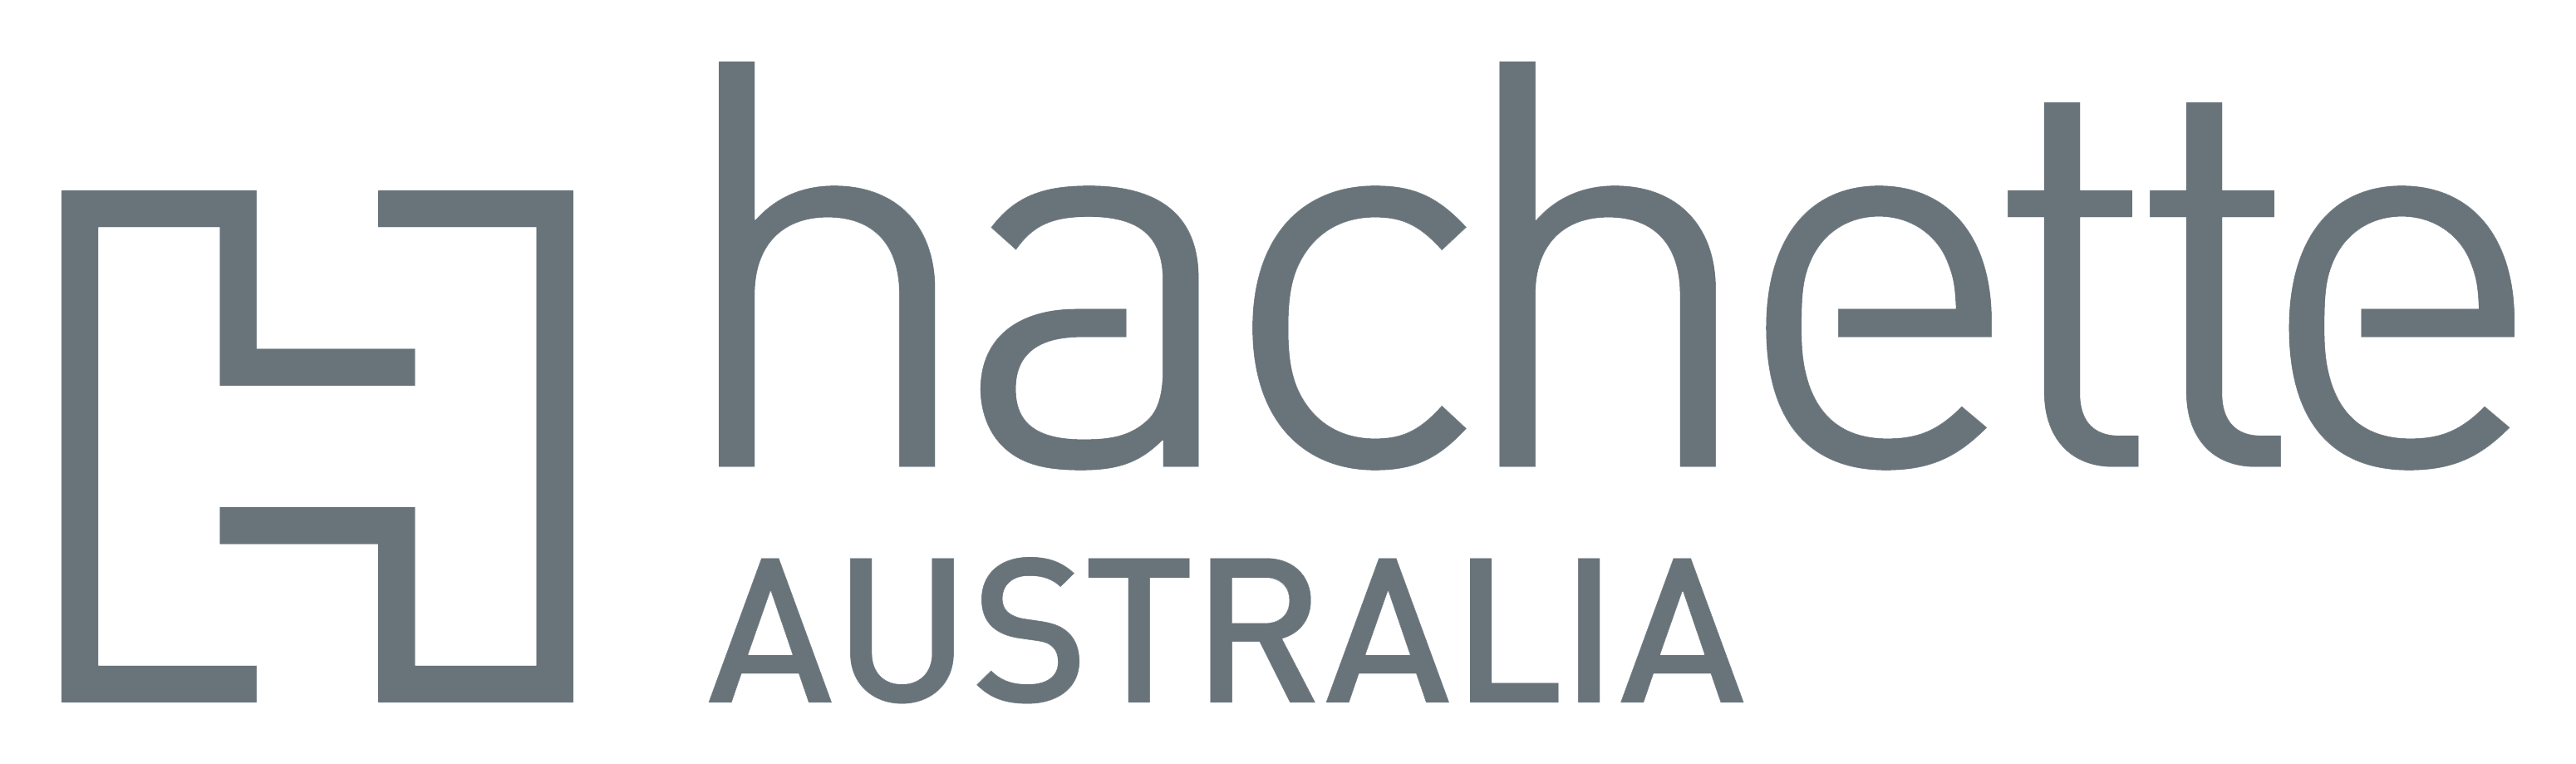 The Hachette Australia logo.